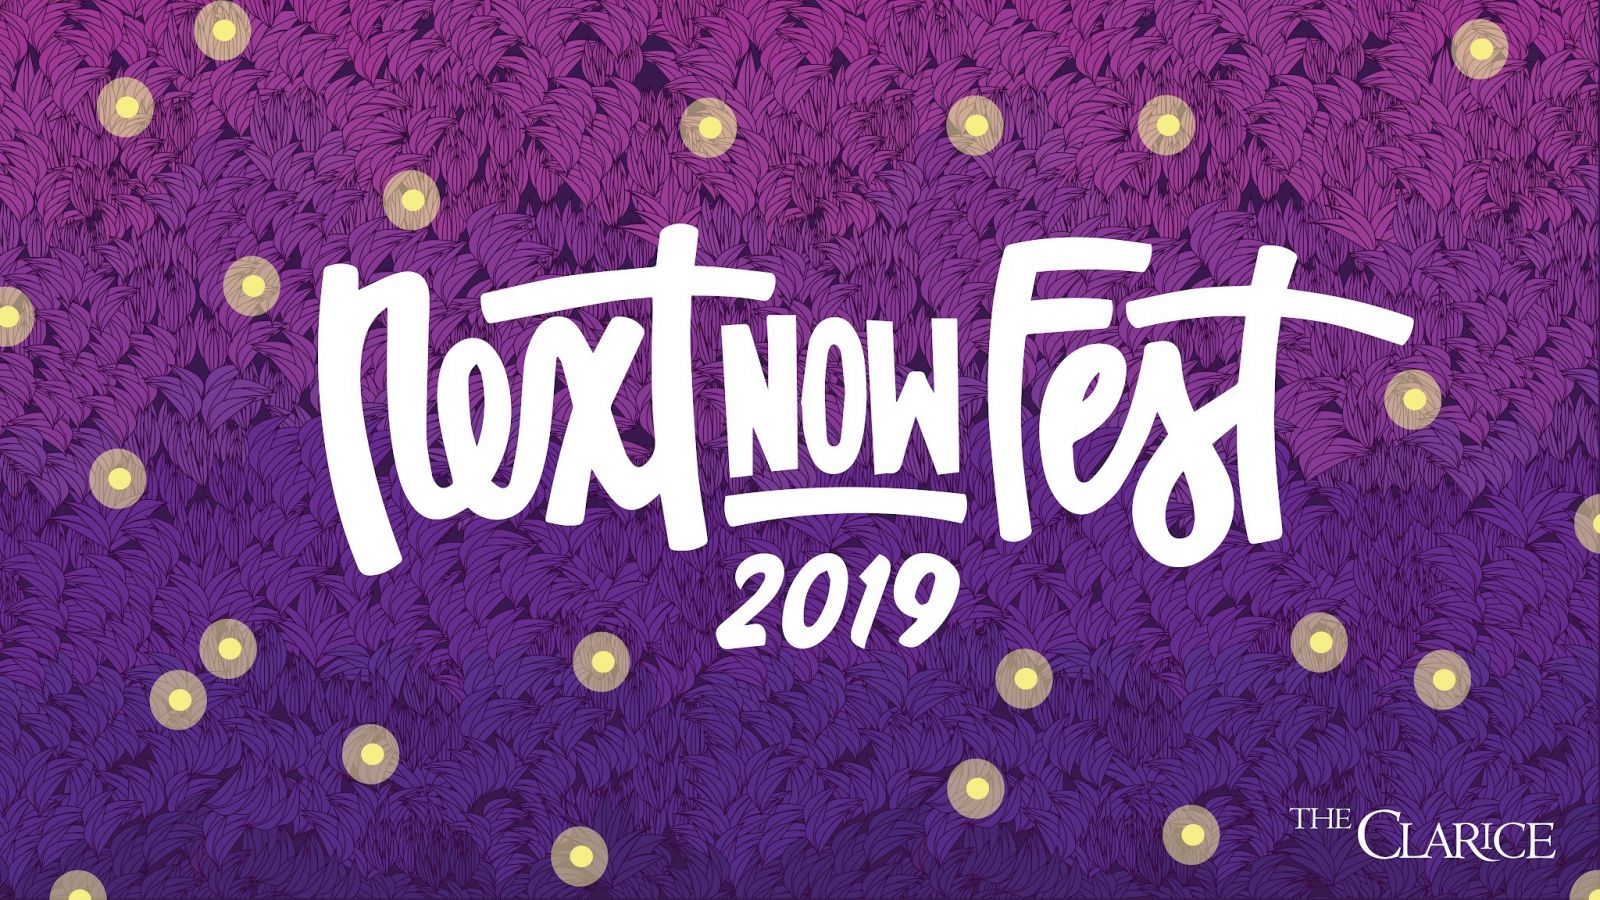 Next NOW Fest 2019